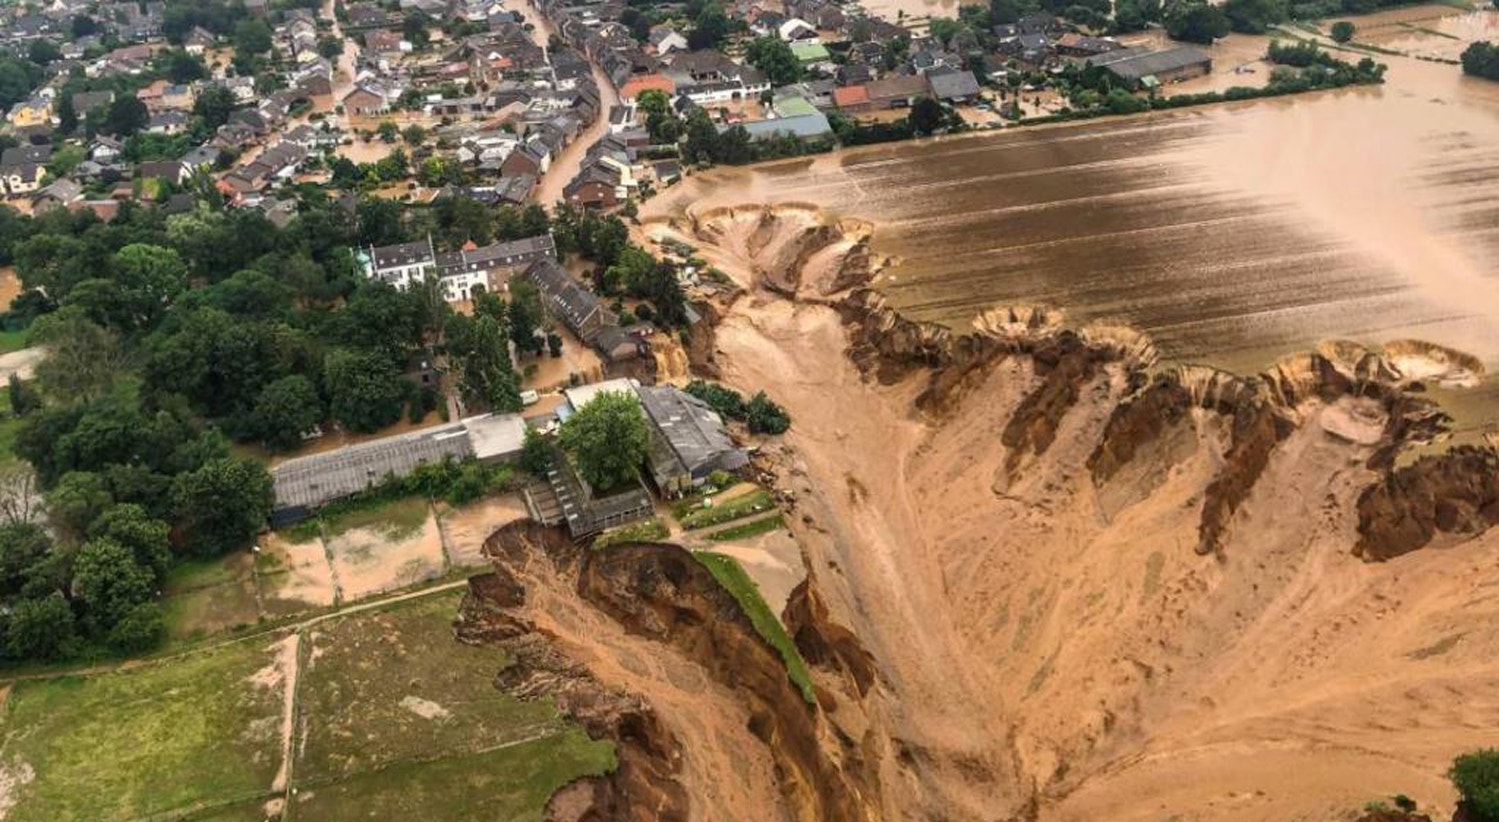  Deslizamento de terras na Alemanha soterraram in&uacute;meras casas e fizeram dezenas de mortos. Parte de um castelo em Blessem, perto de Col&oacute;nia, colapsou quando as &aacute;guas do rio Erft subiram | Rhein-Erft-Kreis - Reuters 